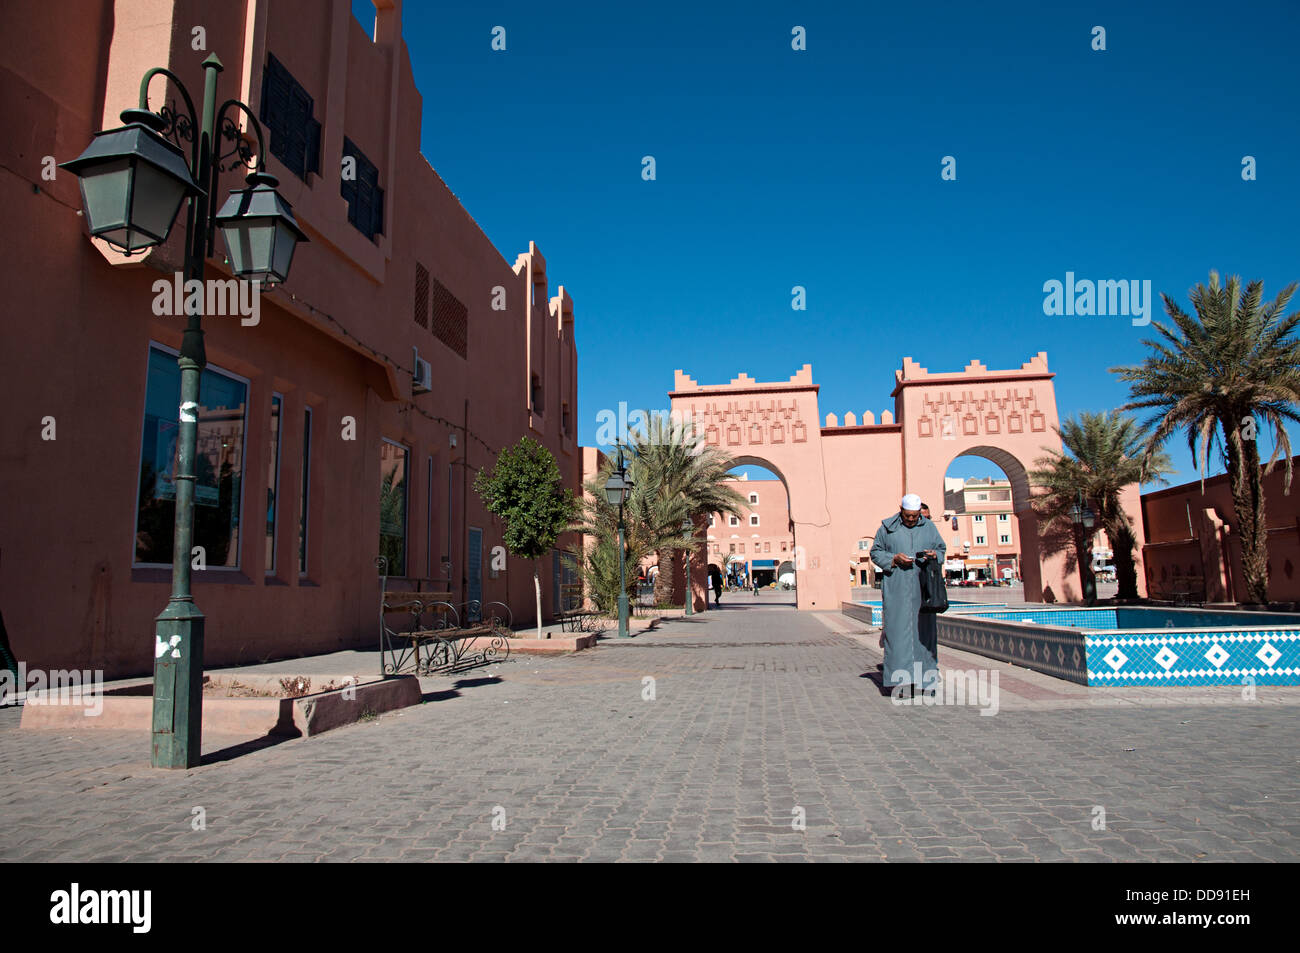 La vie quotidienne dans le centre-ville de Ouarzazate, Maroc Banque D'Images